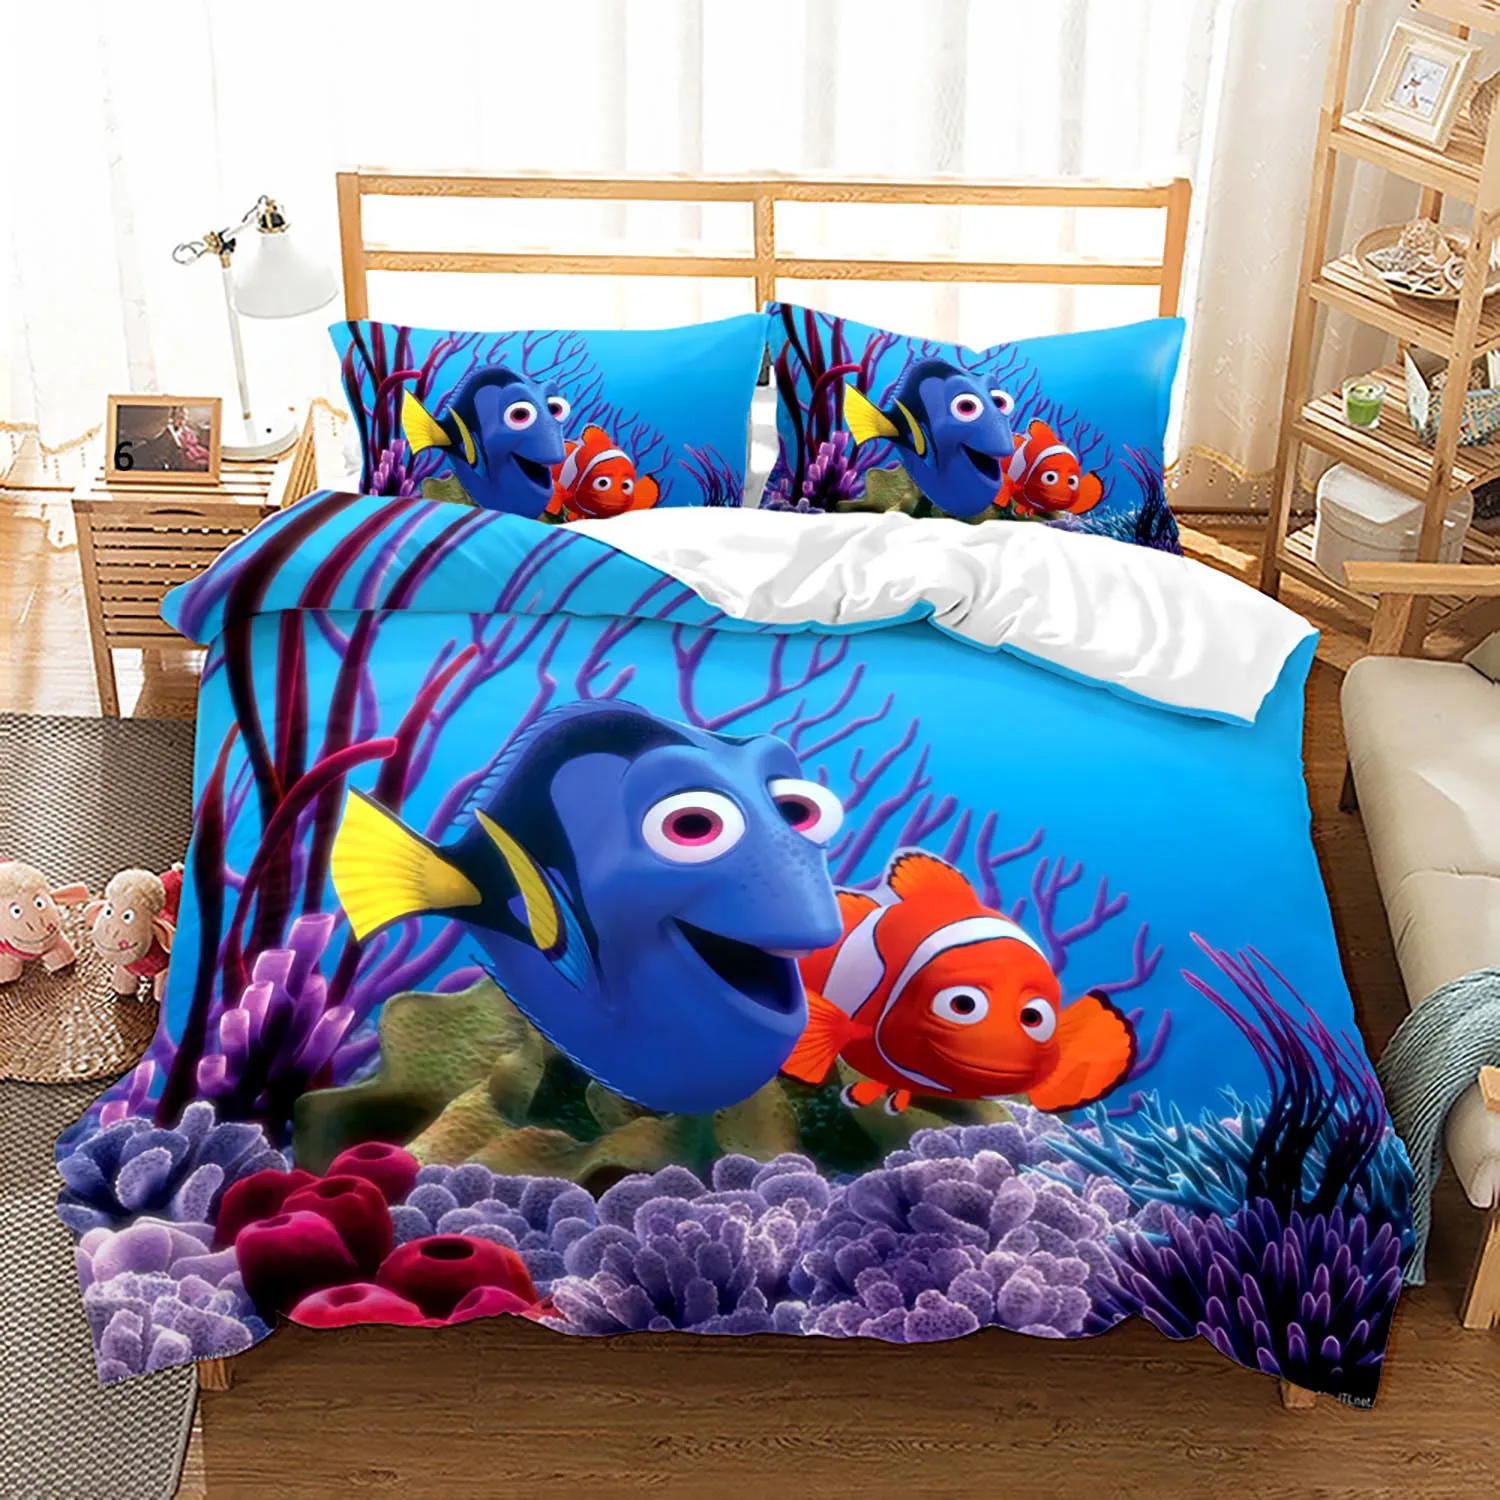 Finding Nemo Quilt Doona Duvet Cover Set Disney Bedding Kids Girls Boys Dory 